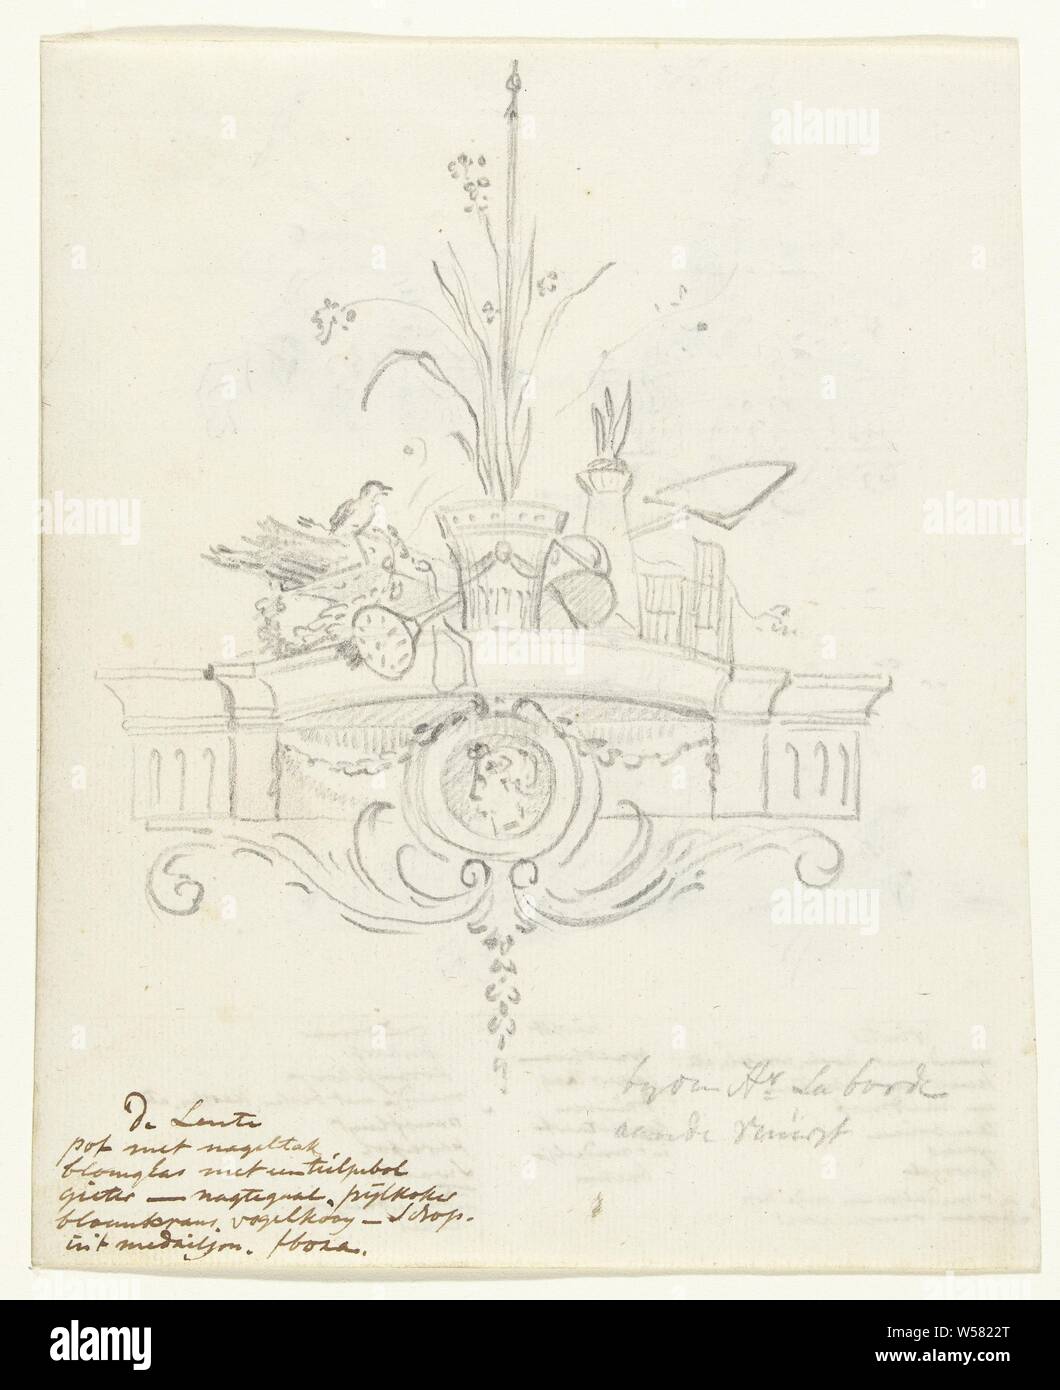 Diseño para una decoración de pared con la alegoría de la primavera, Jurriaan Andriessen, c. 1752 - c. 1819, papel, grafito (mineral), h 193 mm × 158 mm w Foto de stock